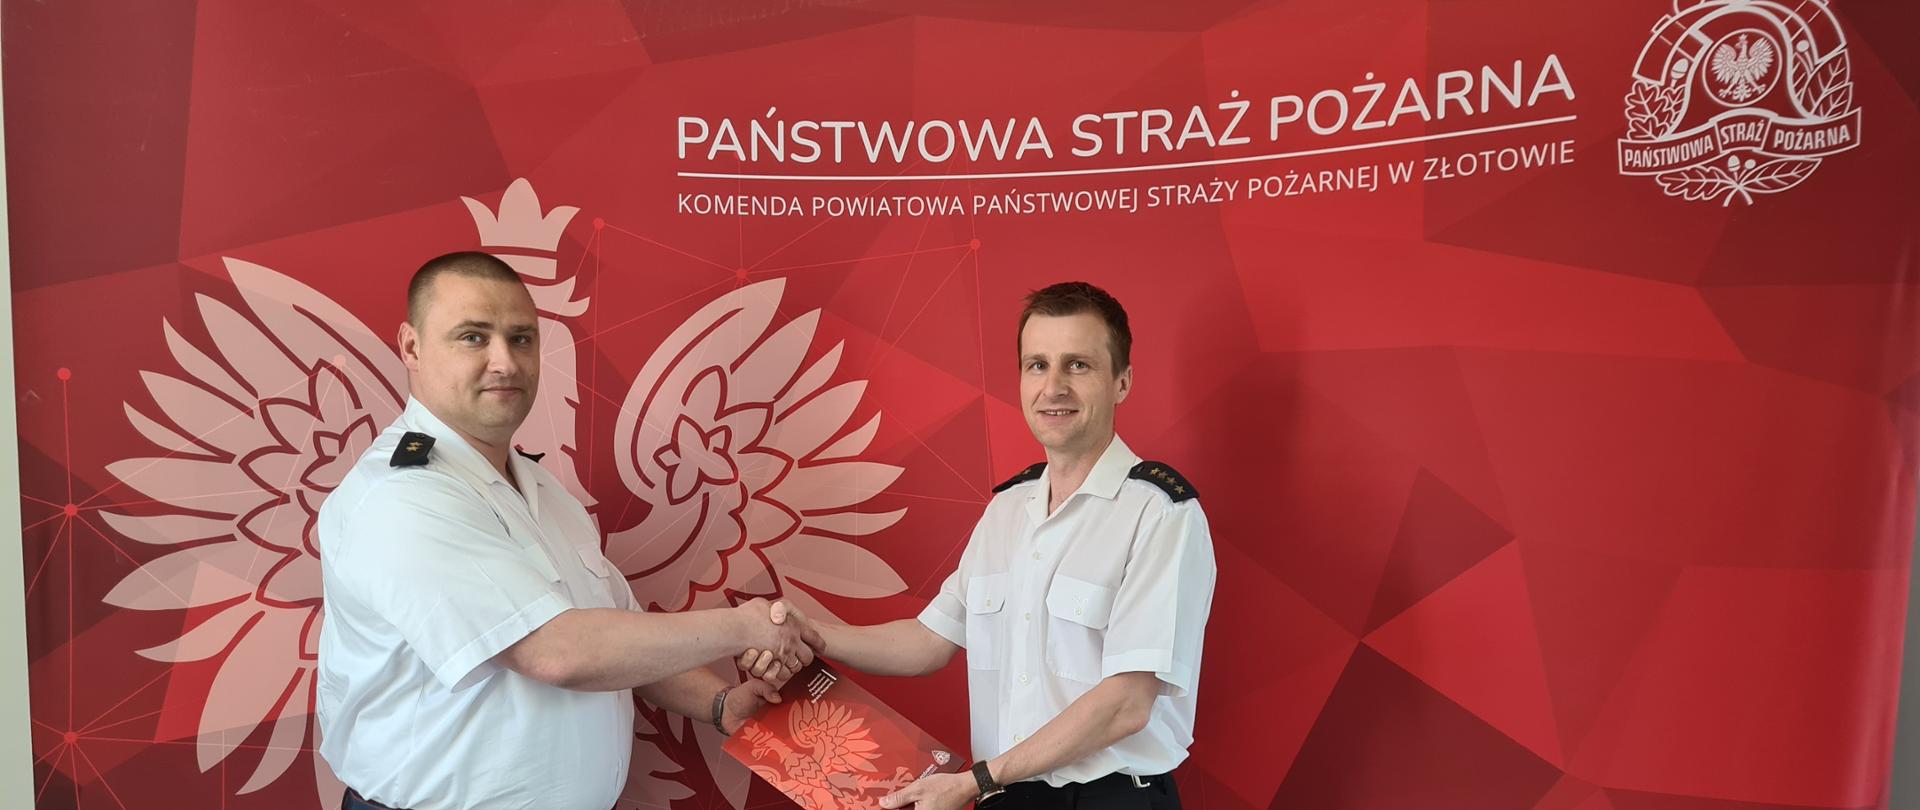 Decyzję o przyznaniu nagrody pieniężnej st. kpt. Piotrowi Manikowskiemu, wręczył osobiście komendant powiatowy PSP w Złotowie mł. kpt. Tomasz Lewandowski.
